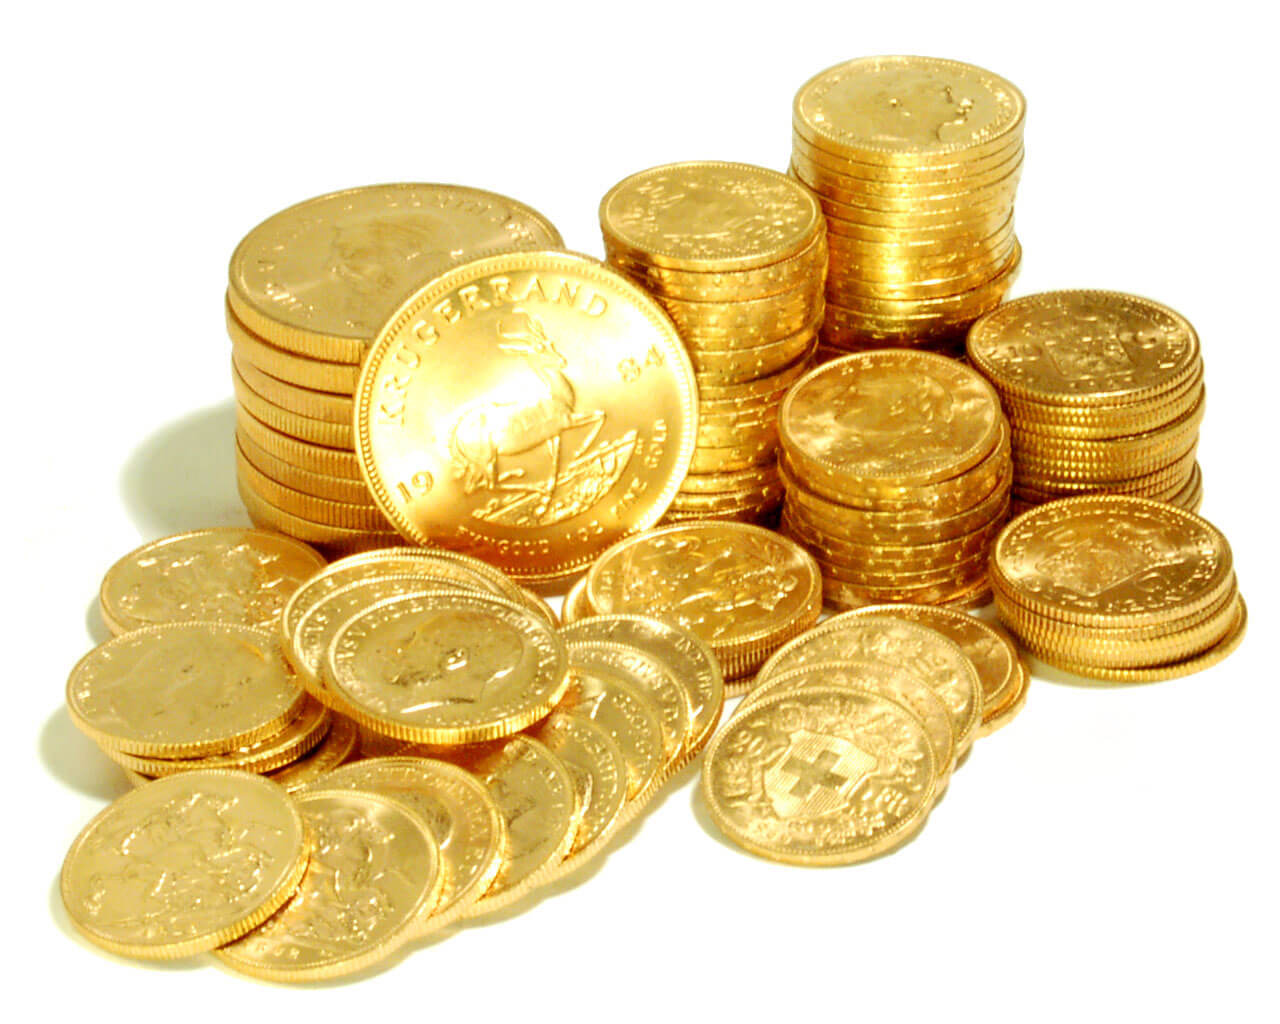 قیمت طلا، قیمت دلار، قیمت سکه و قیمت ارز در بازار امروز